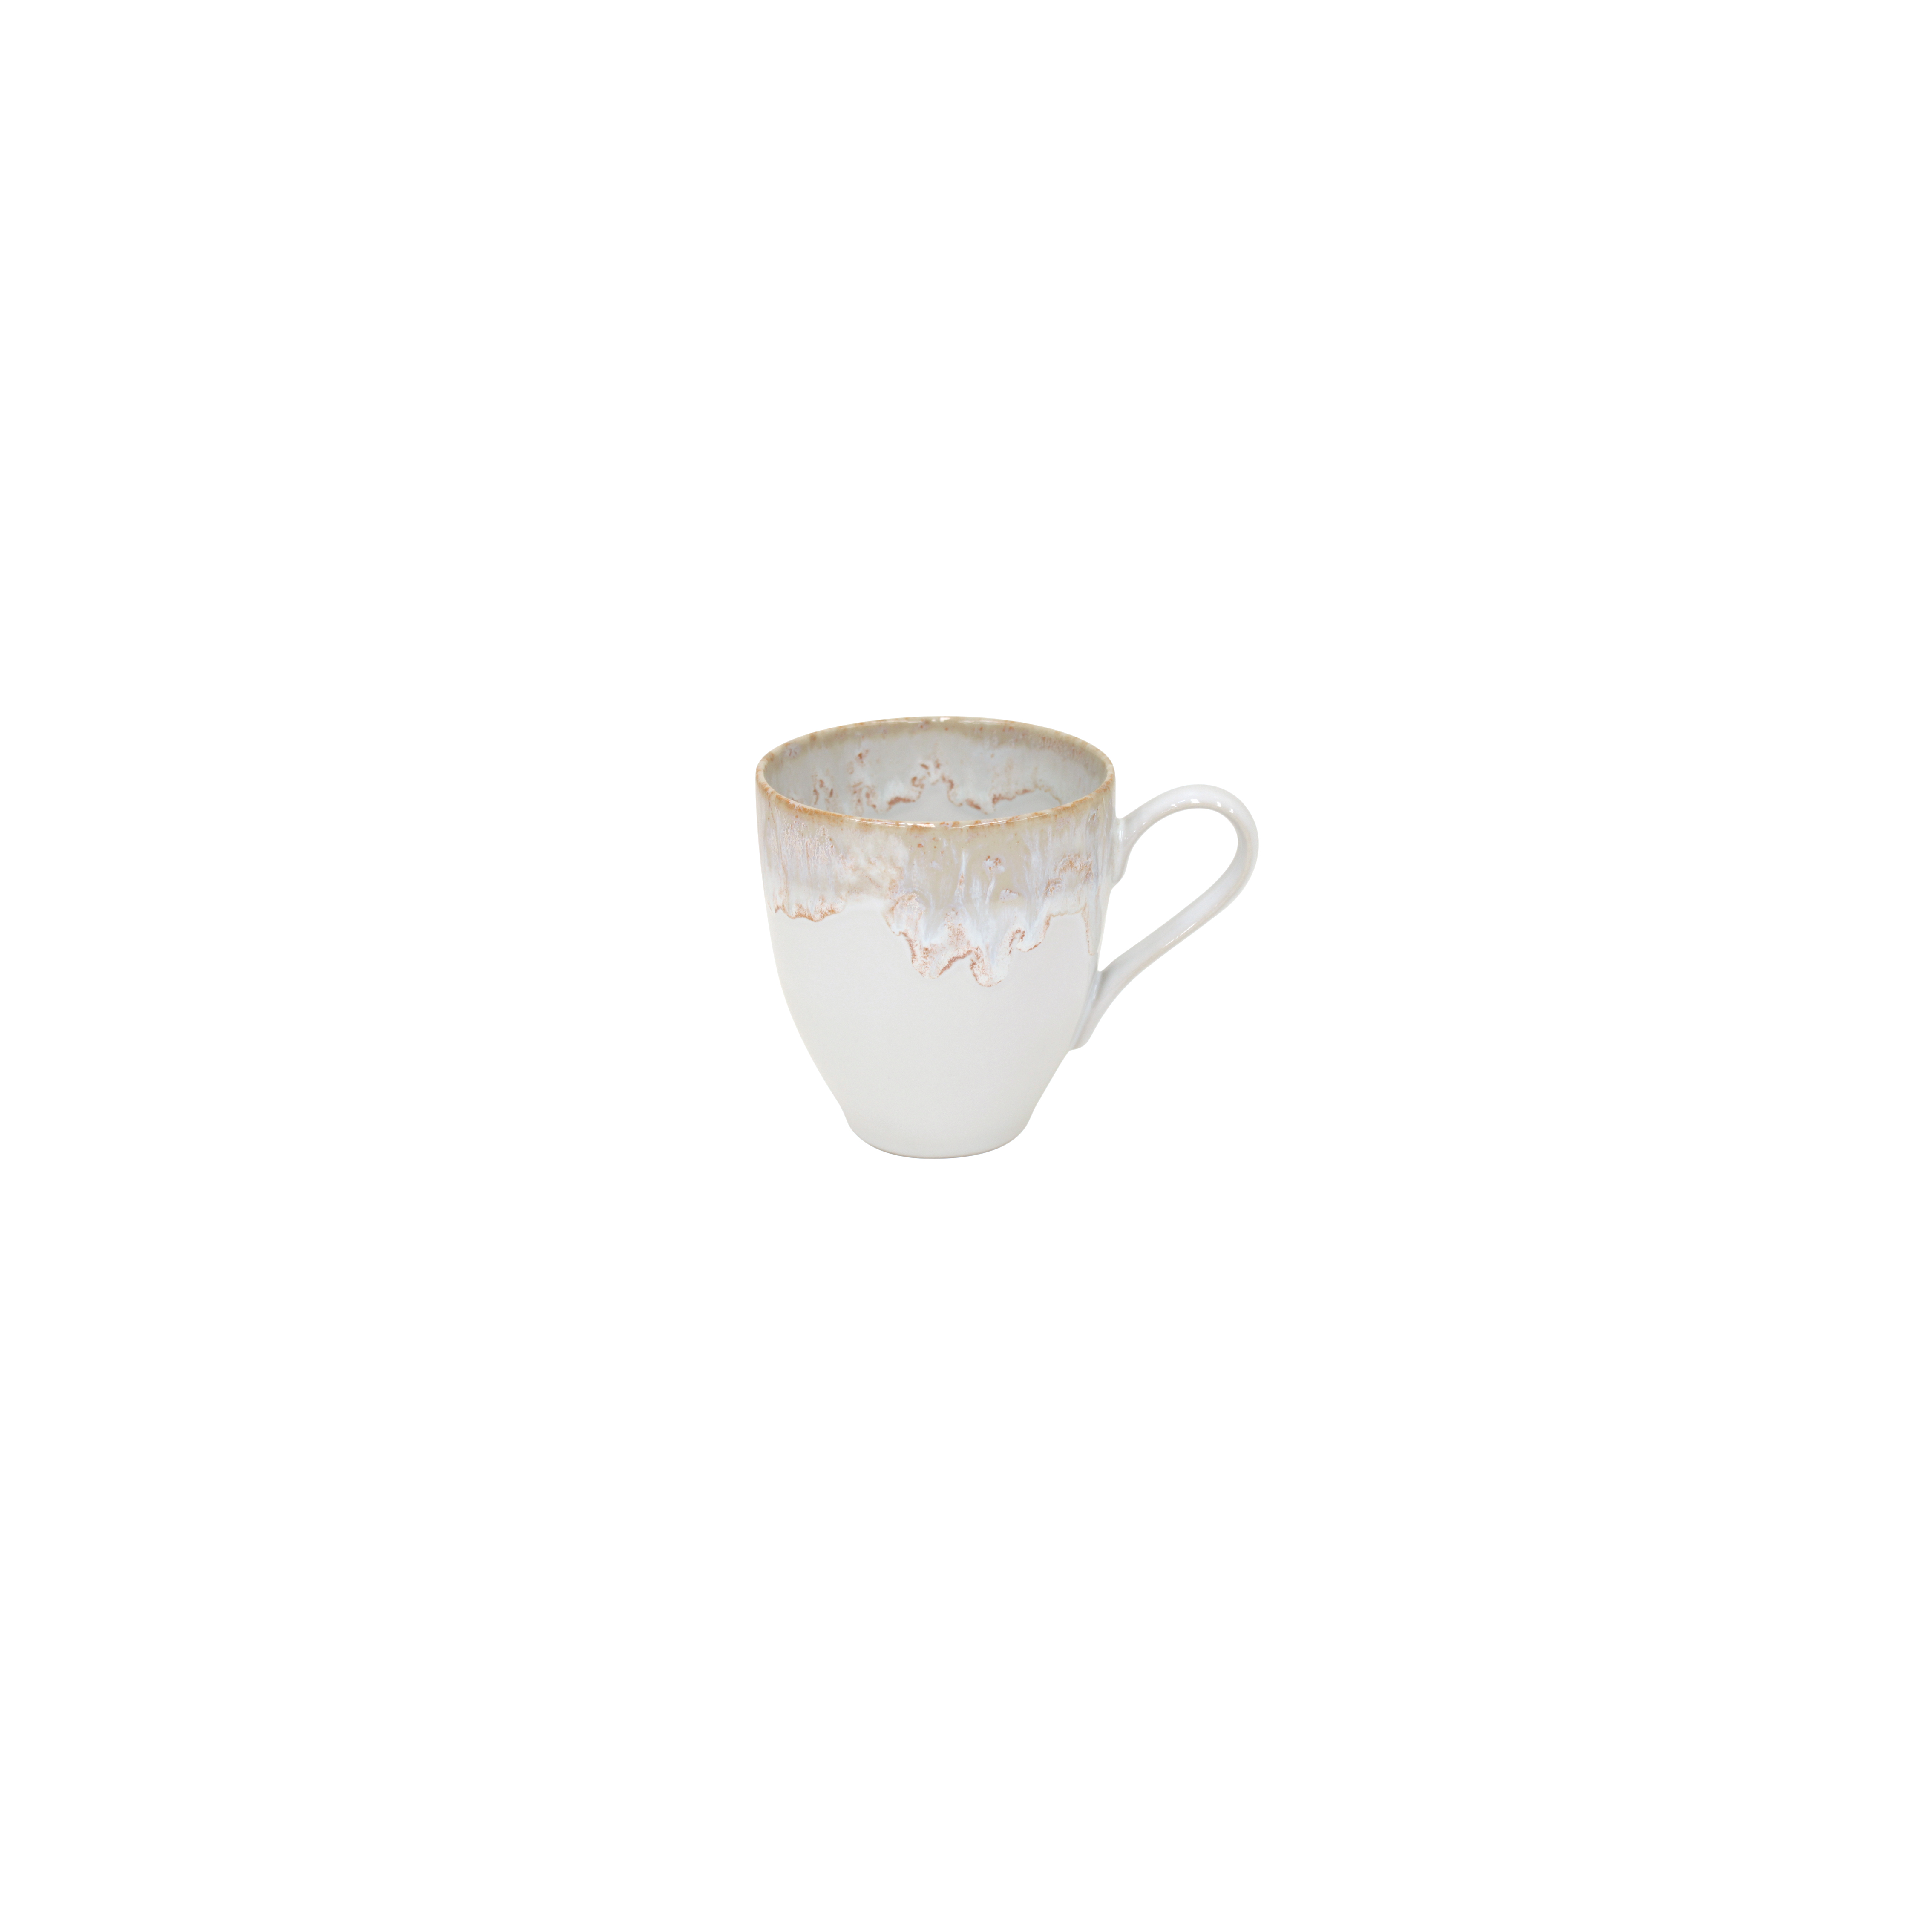 Taormina White Mug 0.41l Gift